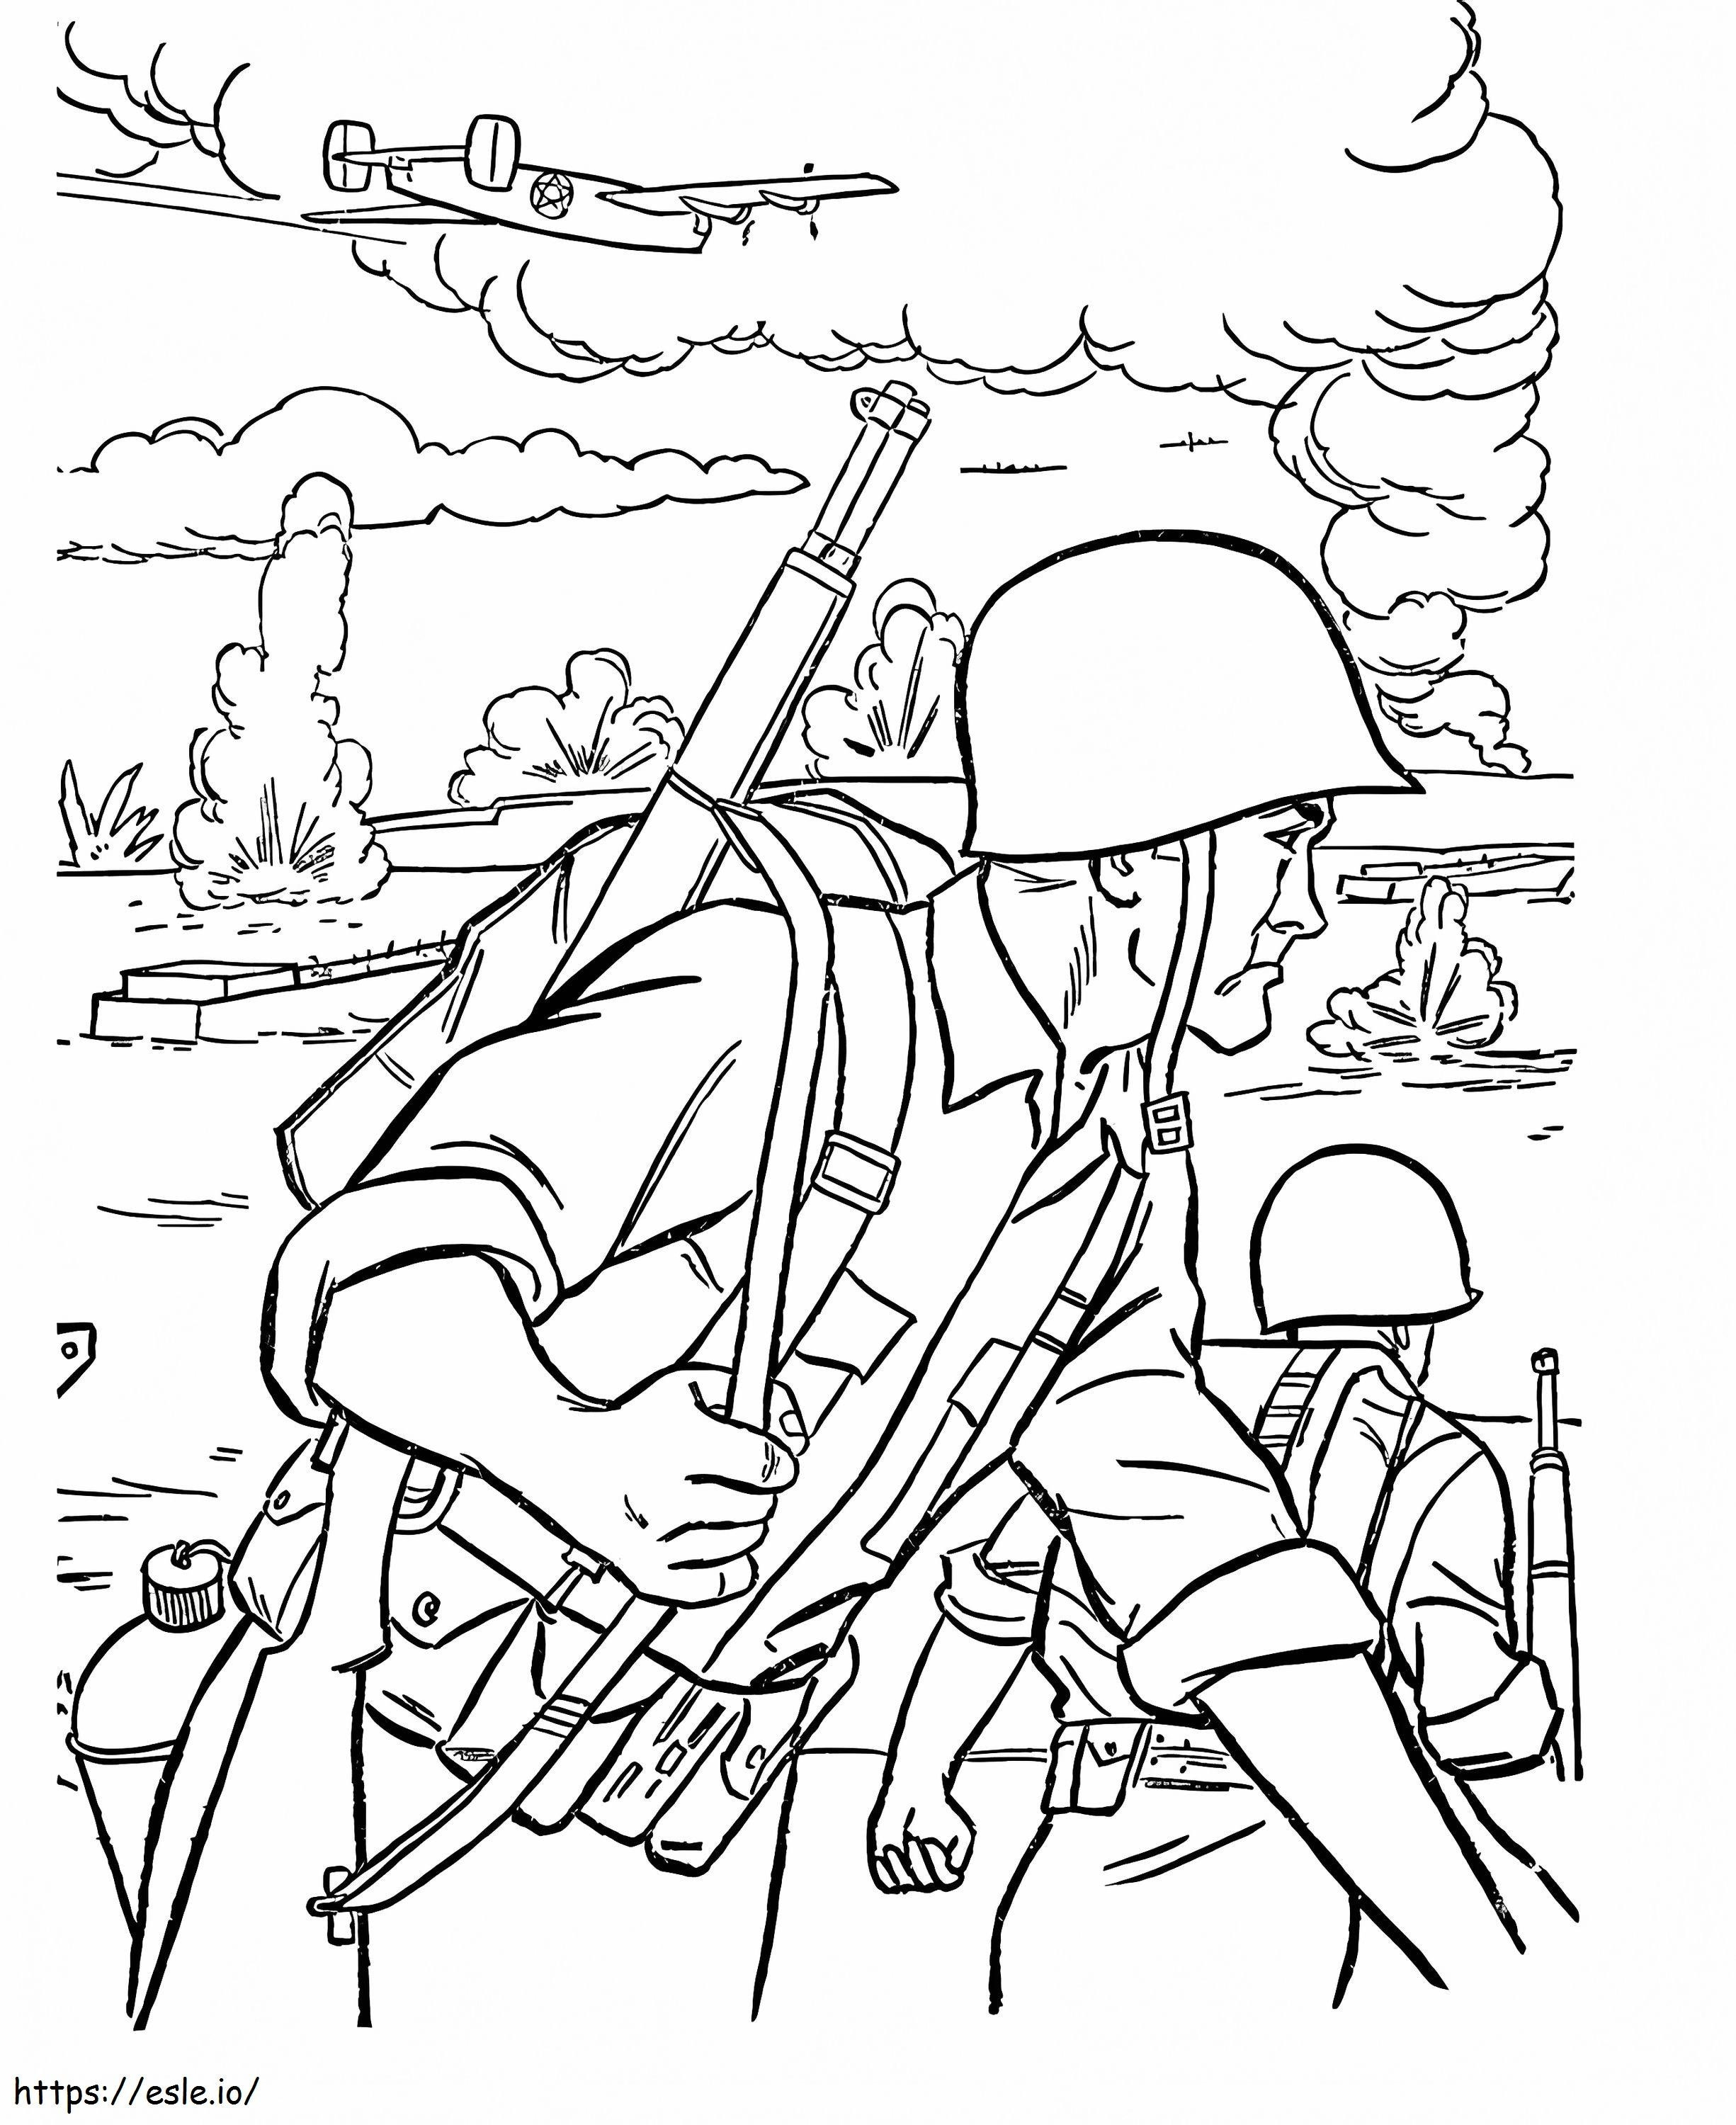 Soldat im Krieg ausmalbilder